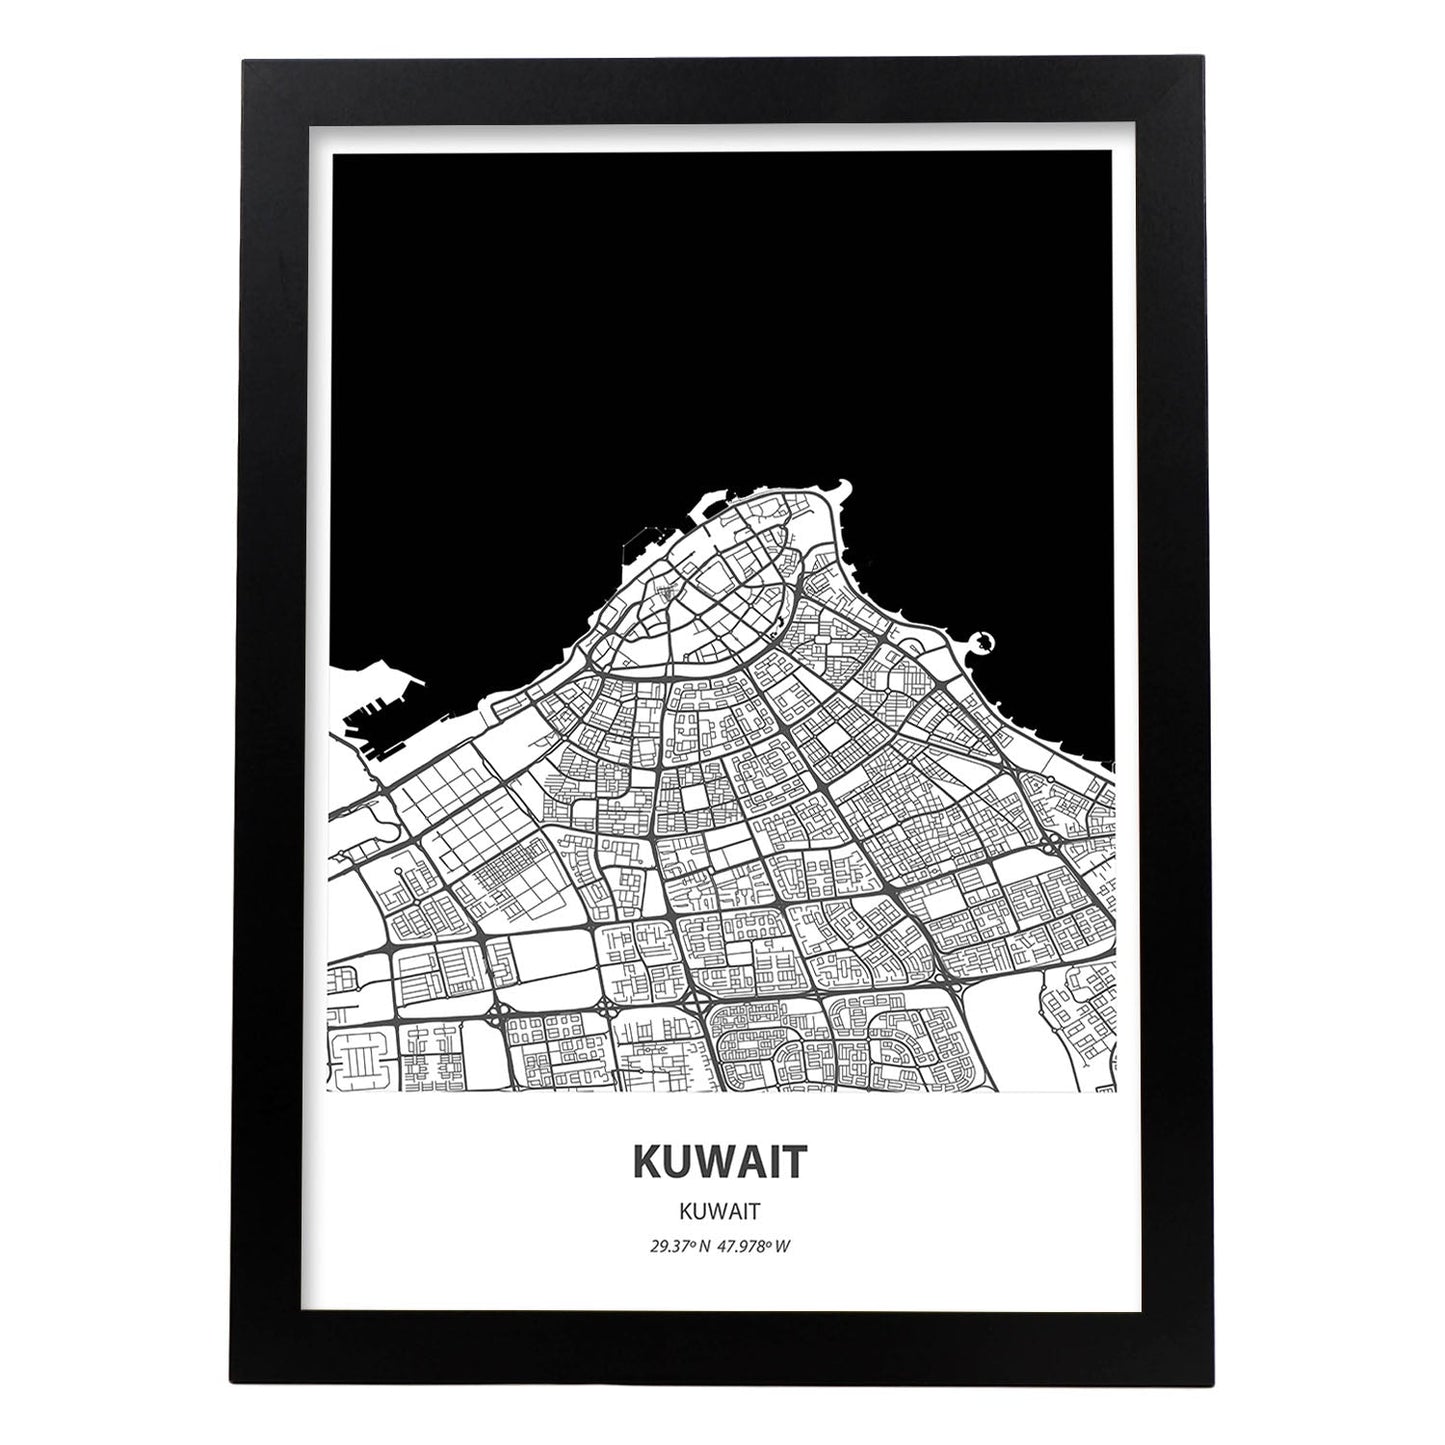 Poster con mapa de Kuwait - Kuwait. Láminas de ciudades de Oriente Medio con mares y ríos en color negro.-Artwork-Nacnic-A4-Marco Negro-Nacnic Estudio SL